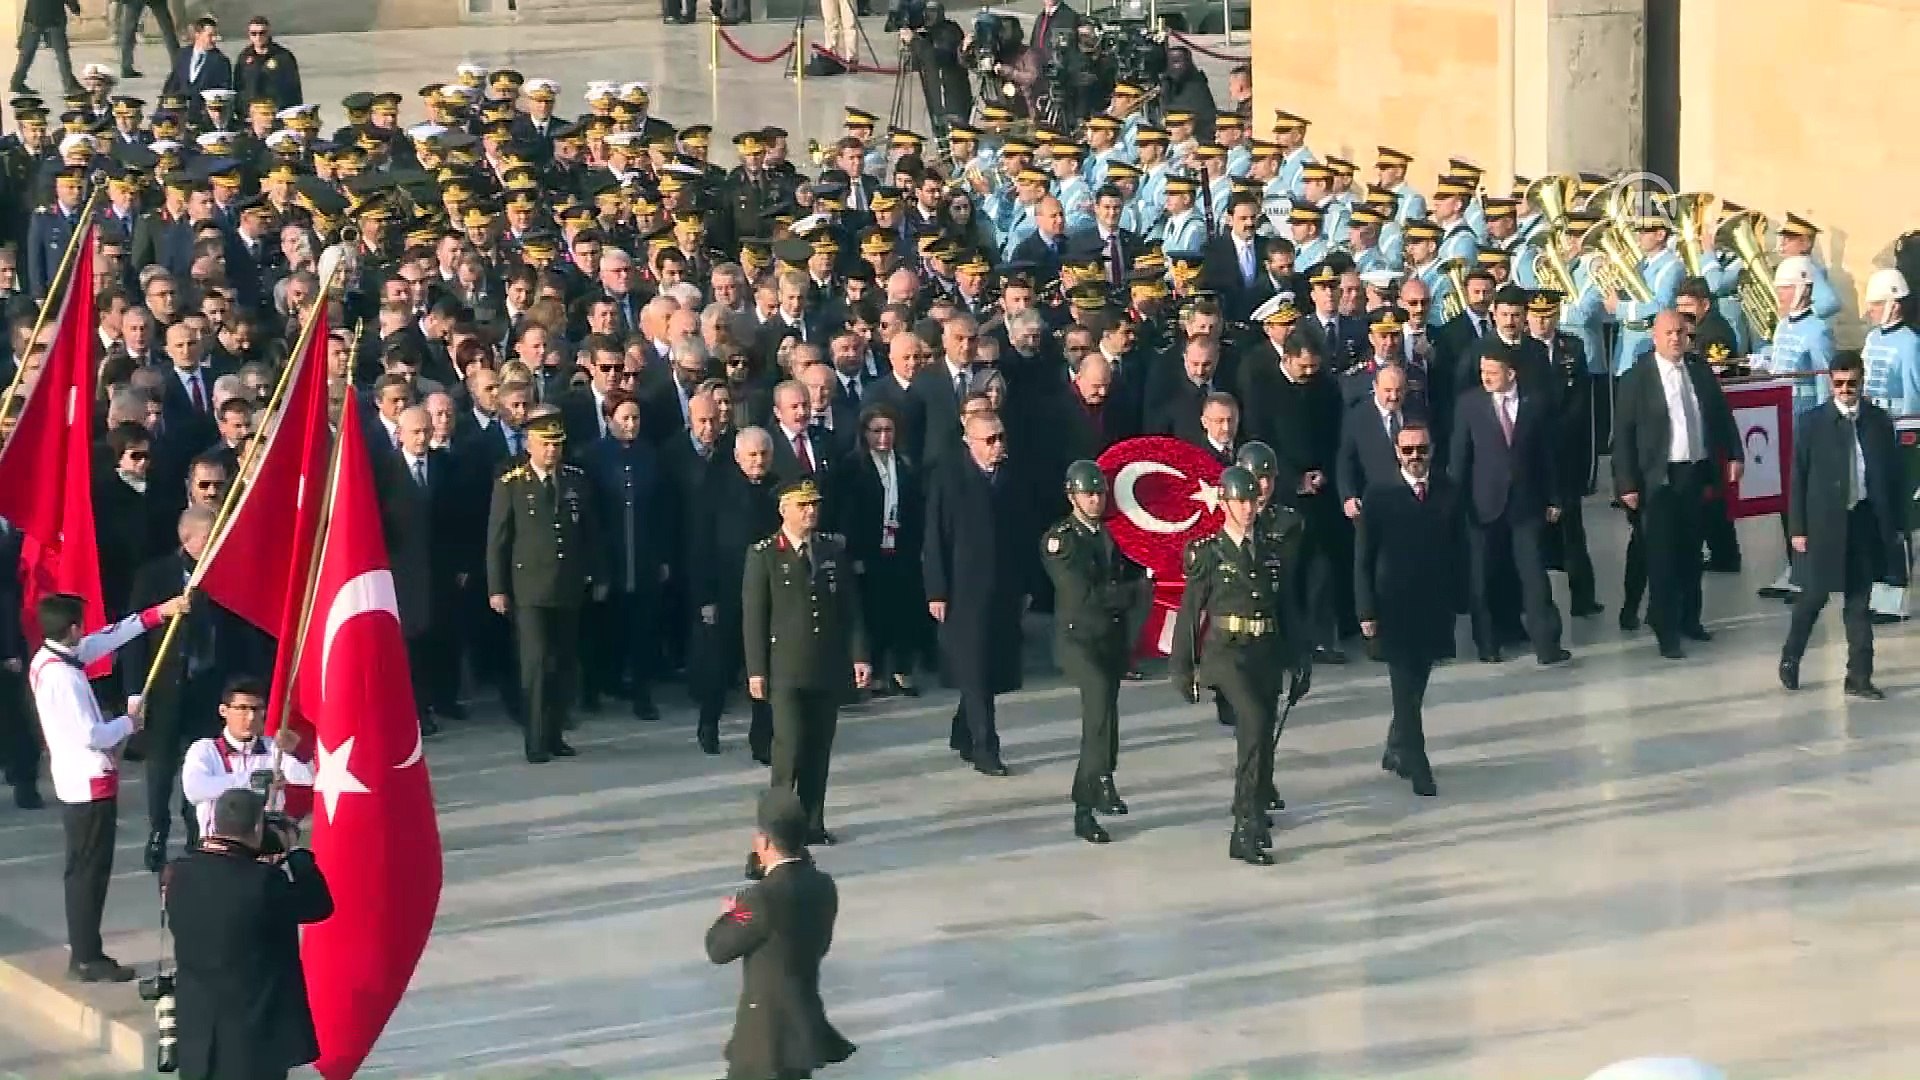 10 Kasım Atatürk'ü Anma günü - Anıtkabir (2) - ANKARA - Dailymotion Video